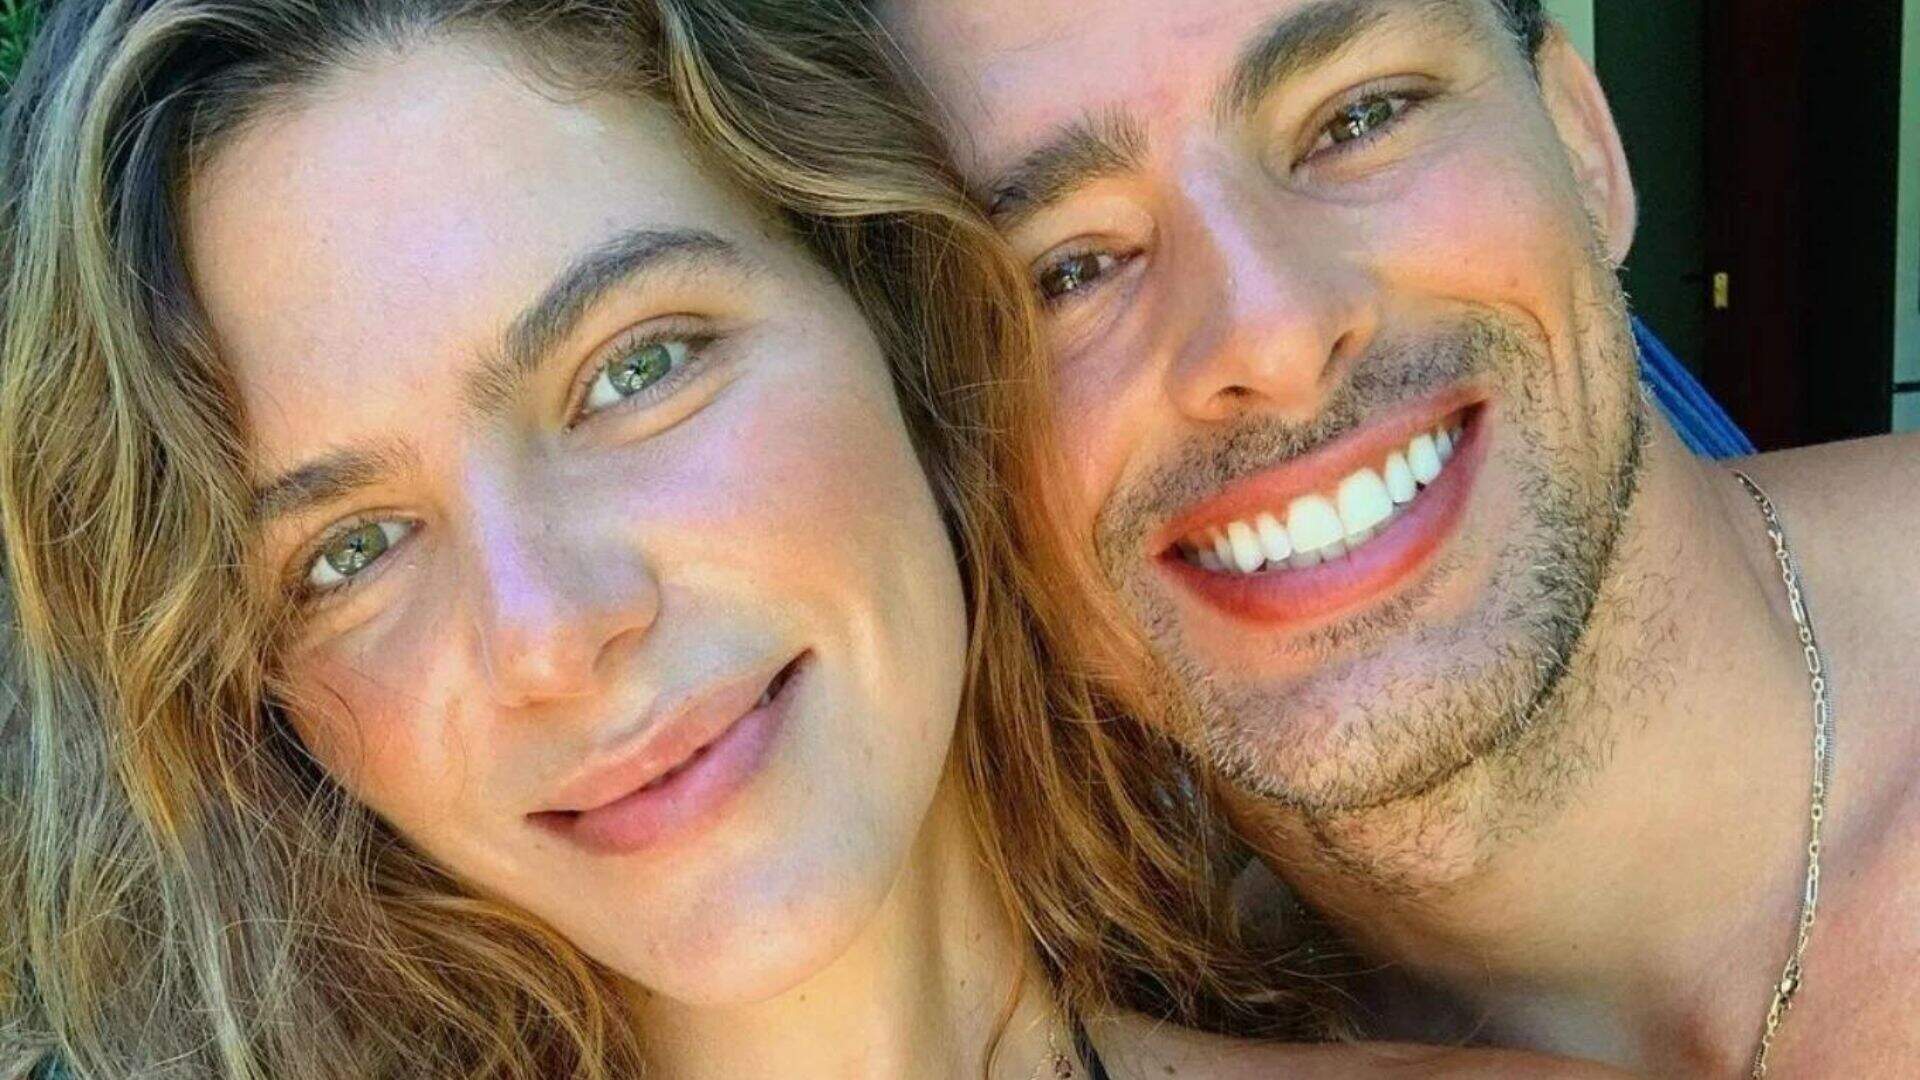 Chega ao fim o casamento do ator Cauã Reymond com a modelo Mariana Goldfarb: “Momento delicado” - Metropolitana FM